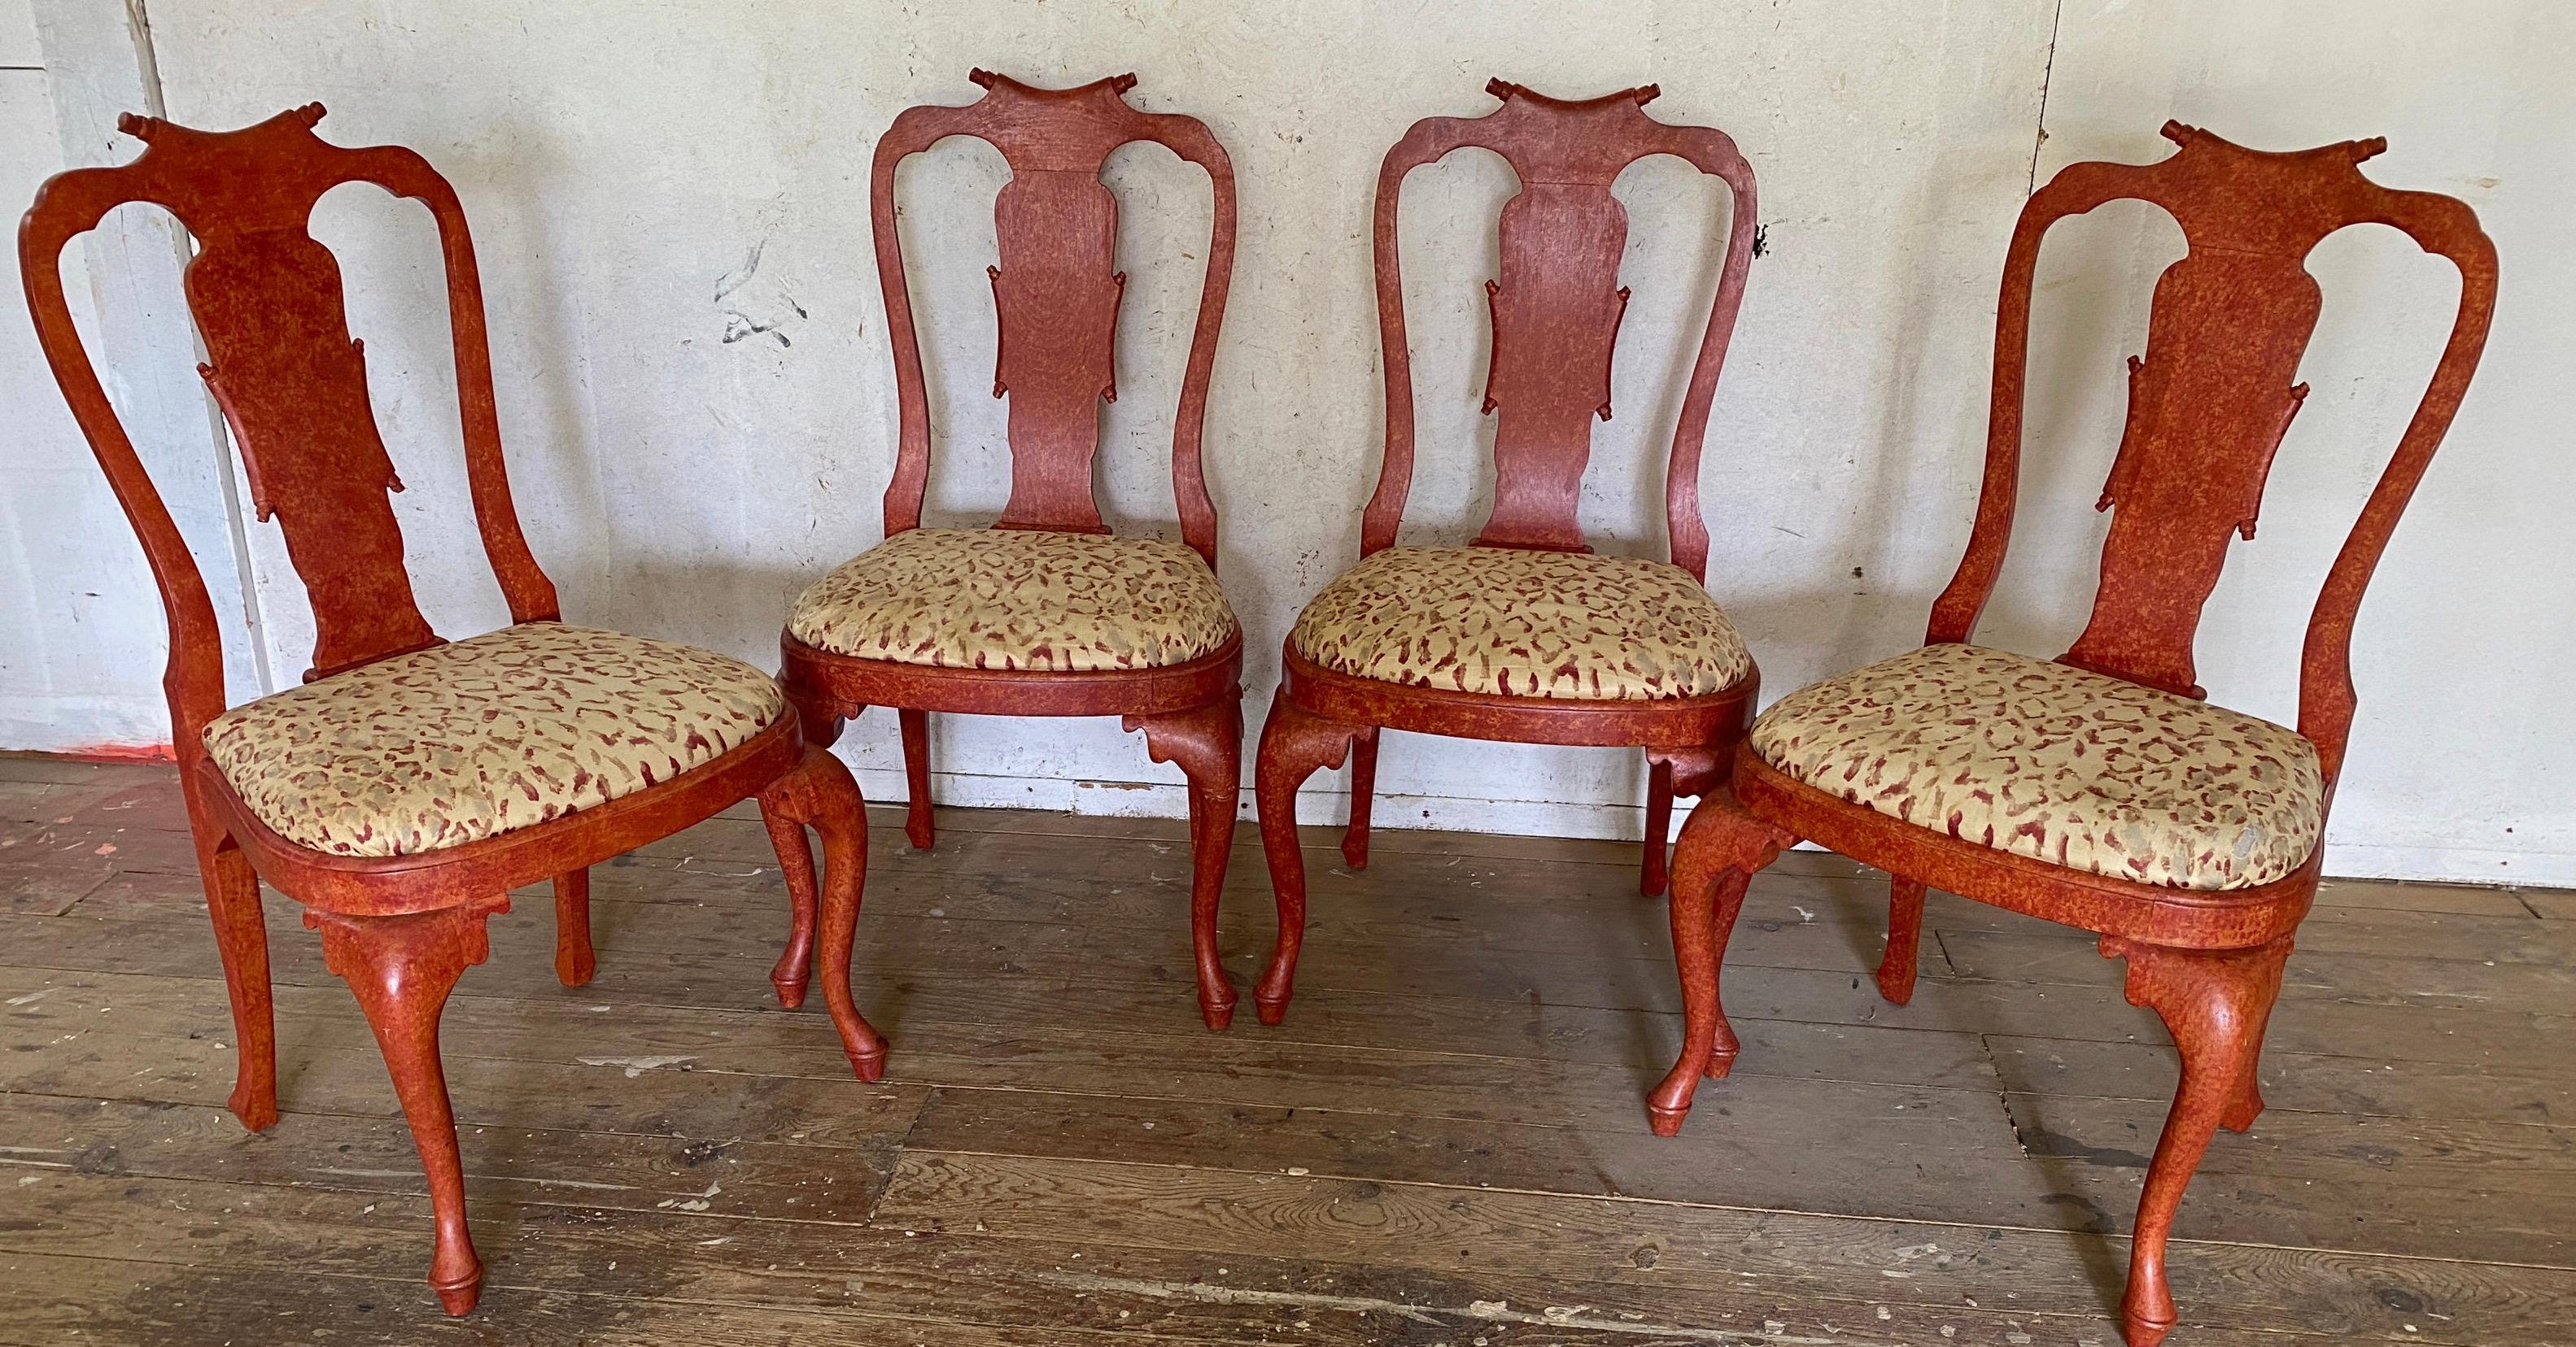 Merveilleux ensemble de 4 chaises latérales italiennes de style Rococo peintes en rouge et tapissées en chintz rouge pommelé ivoire. La tapisserie d'une chaise est usée et laisse apparaître le matériau de base.
Termes de recherche : Style Queen